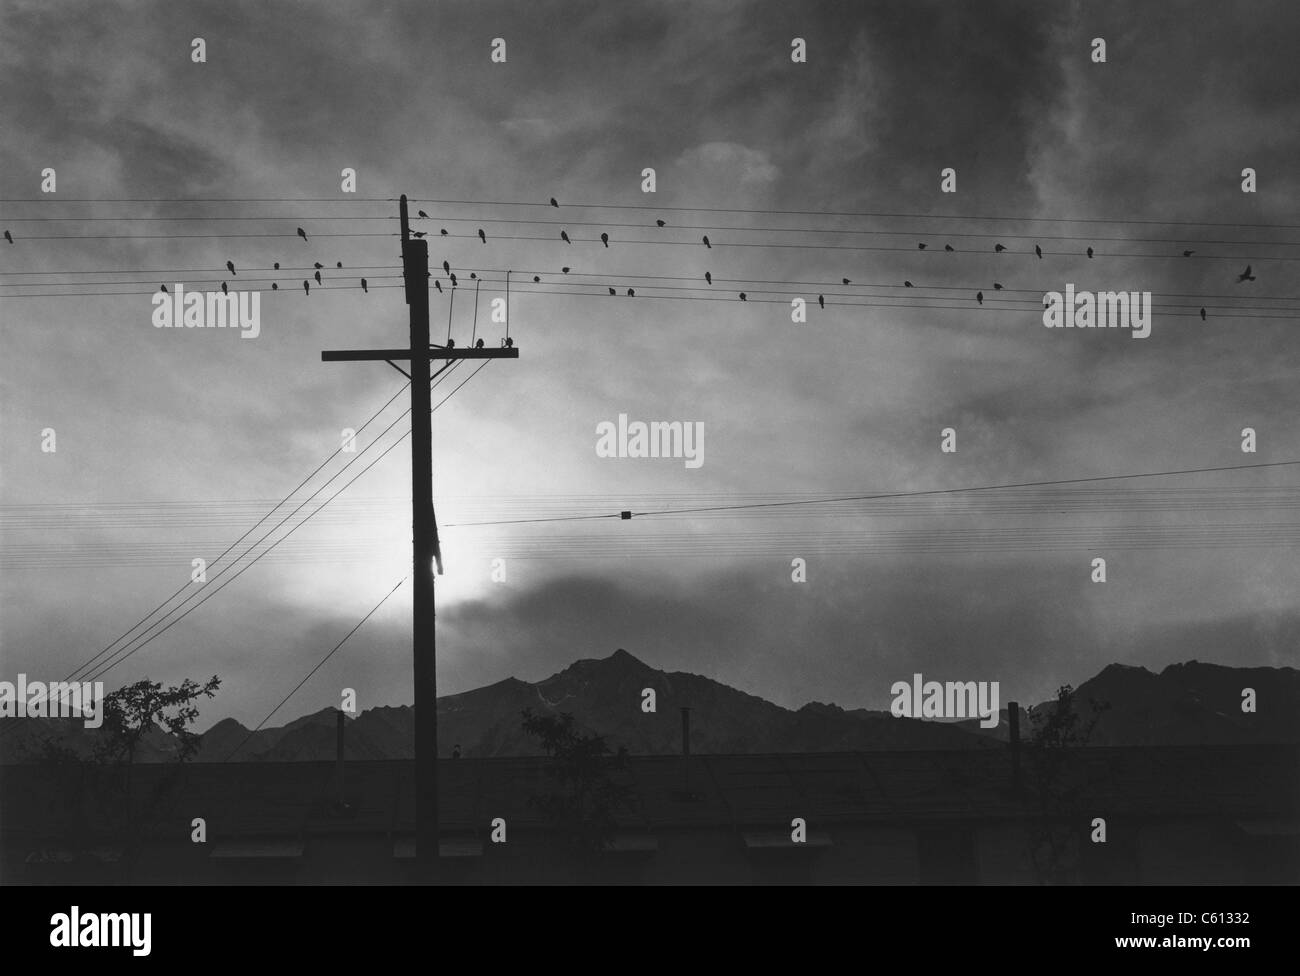 "Vögel auf Draht, Abend, Manzanar Relocation Center", 1943-Foto von Ansel Adams. Foto wurde während Adams Regierung Zuordnung zu japanischen amerikanischen Alltag im Internierungslager Manzanar während des zweiten Weltkriegs zu fotografieren. Stockfoto